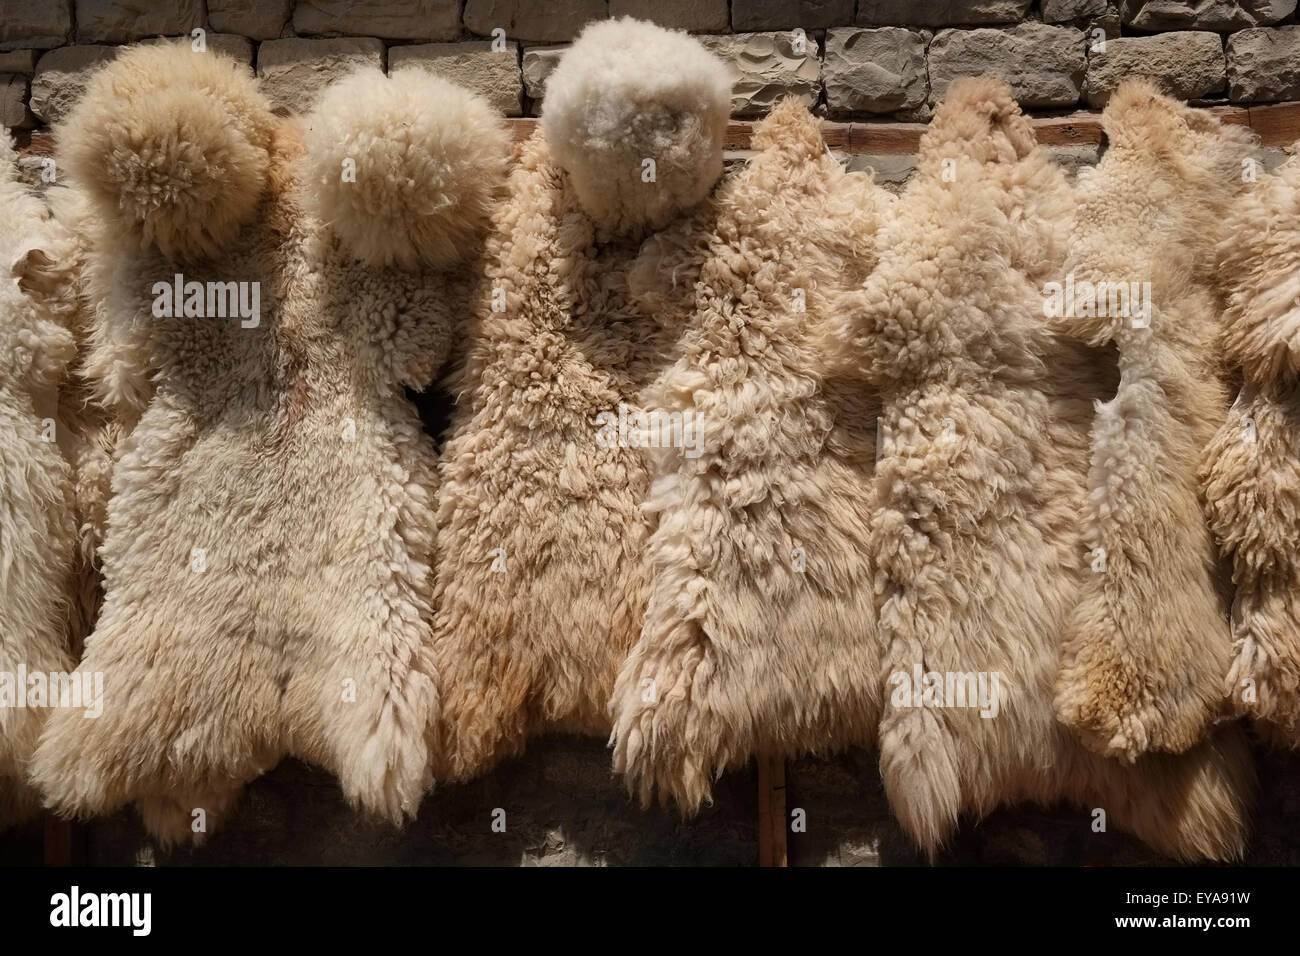 Schaffell Kleidungsstück bezeichnet Papakha auch bekannt als Astrachan Hut  in englischer Sprache, eine Wollmütze, getragen von den Männern im gesamten  Kaukasus. Aserbaidschan Stockfotografie - Alamy